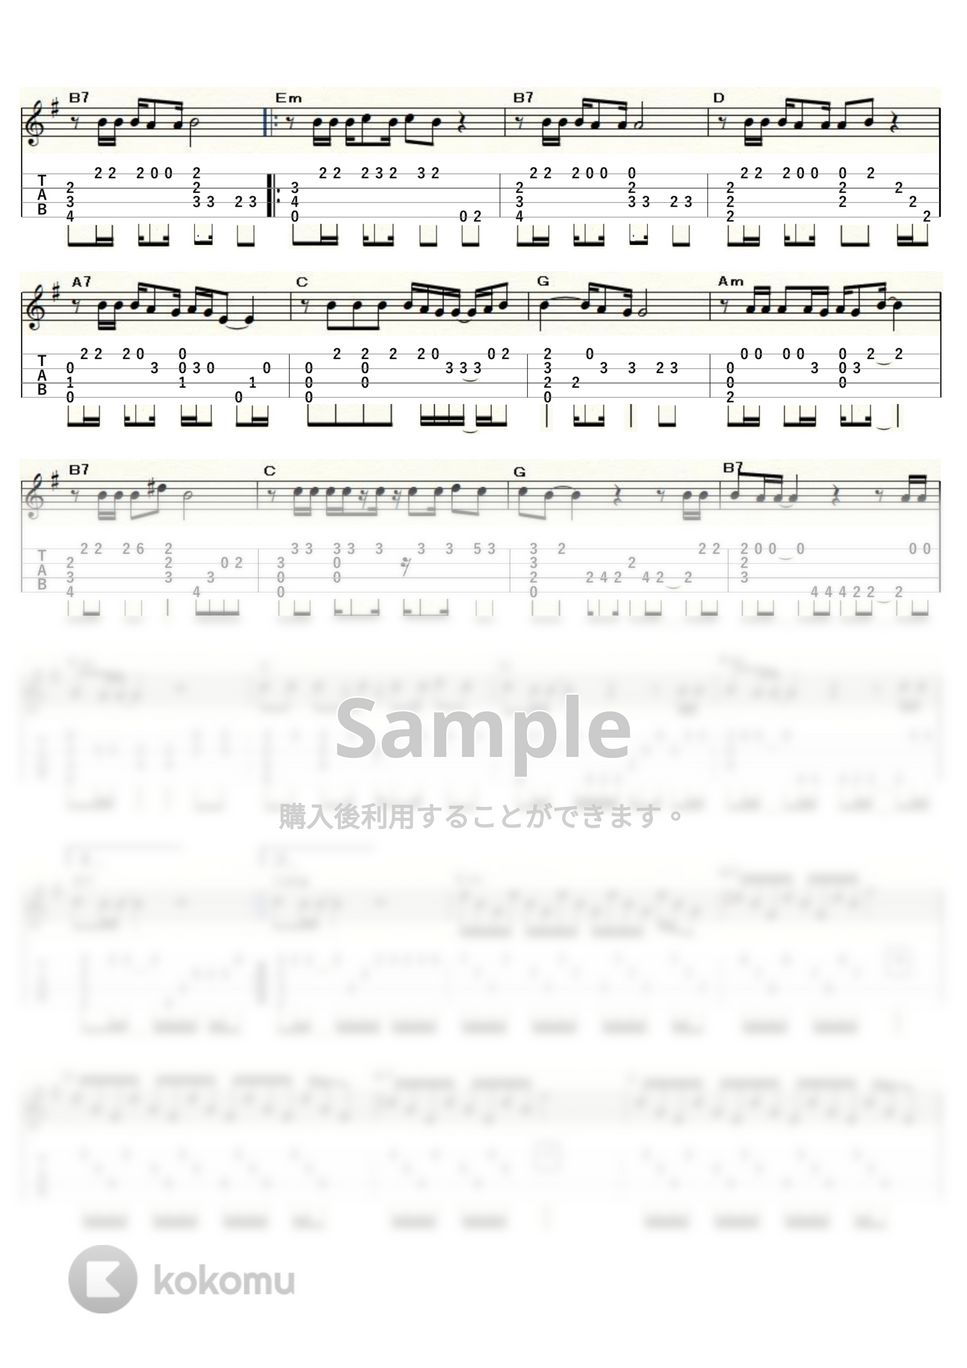 イーグルス - ホテル・カリフォルニア (ｳｸﾚﾚｿﾛ / Low-G / 上級) by ukulelepapa